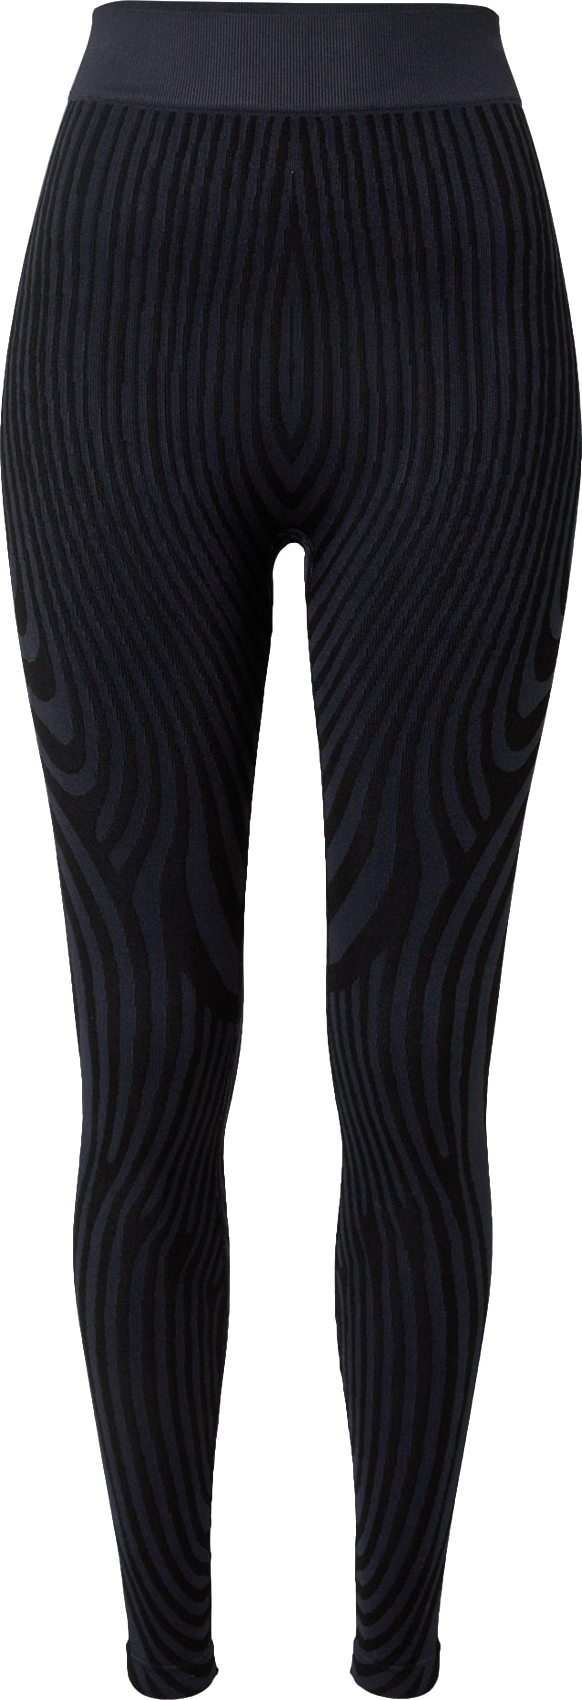 Lapp the Brand Sportovní kalhoty 'Illusion' tmavě šedá / černá